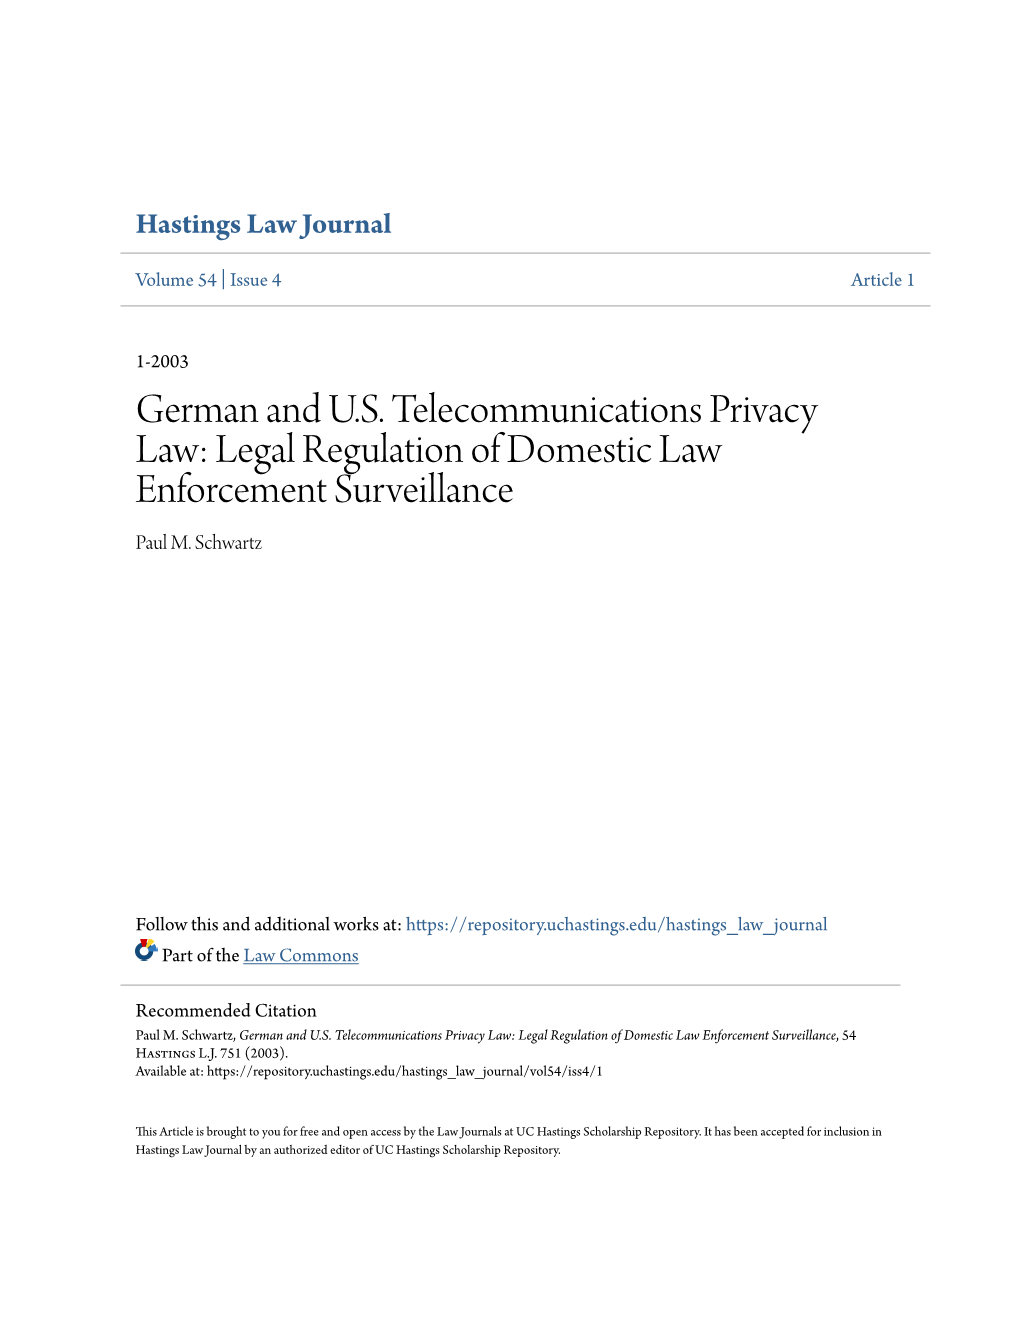 Legal Regulation of Domestic Law Enforcement Surveillance Paul M